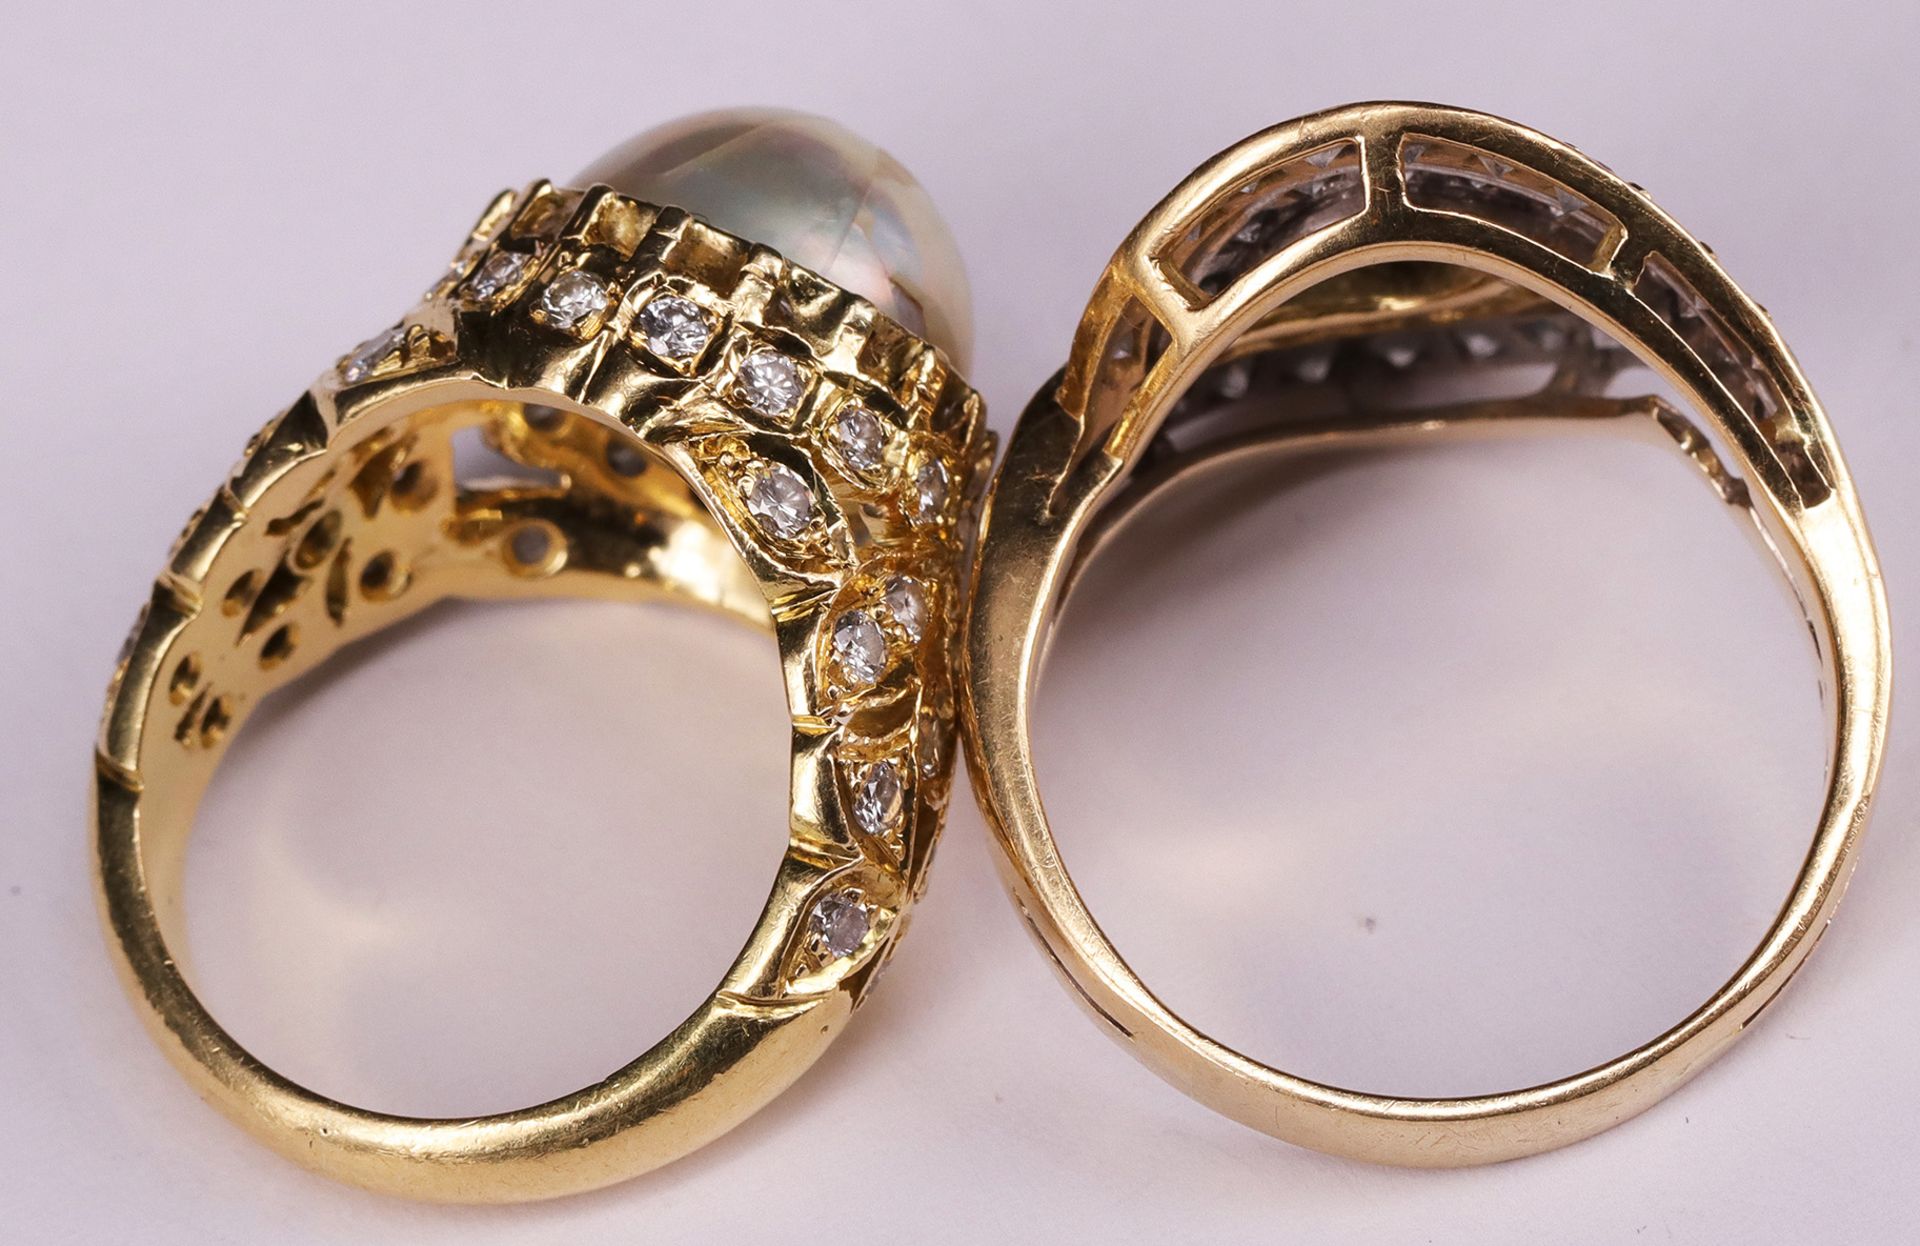 2 Ringe. Aufwändiger Diamantring, 750er GG, mit 1,38 ct Diamanten, RG63, Herkunft Israel. Sowie - Bild 2 aus 2